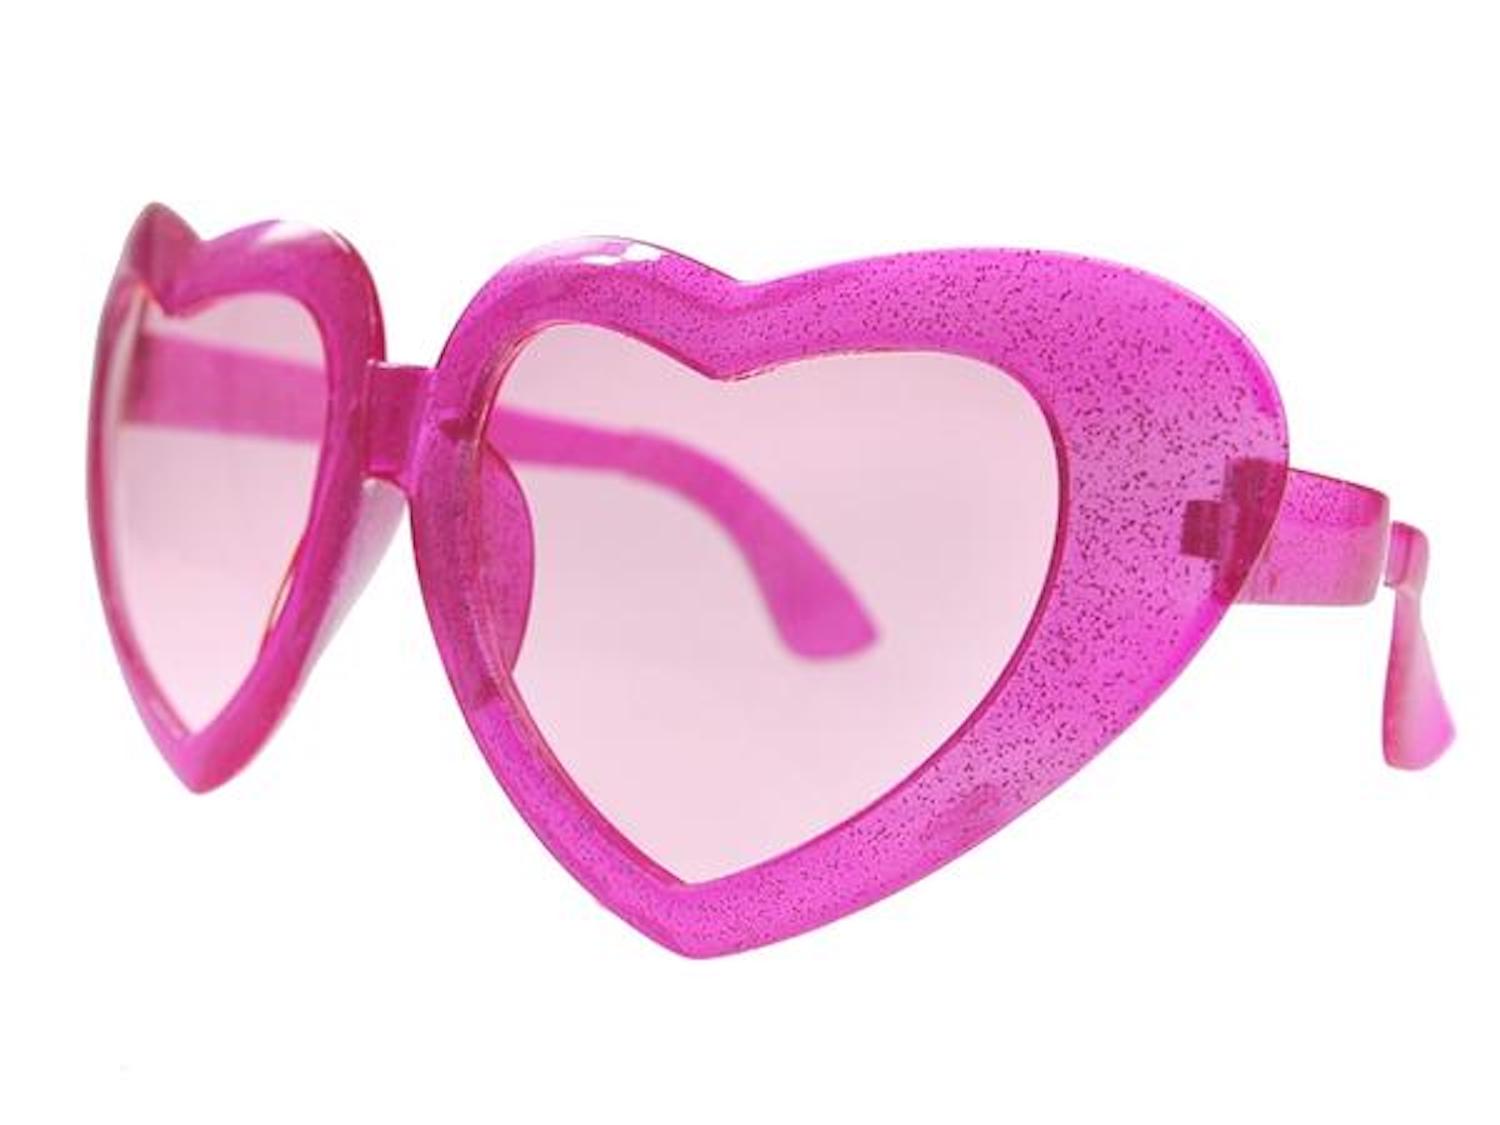 Partybrille Maxi Herz Pink glänzend 8 x 23 cm  1 Stck.